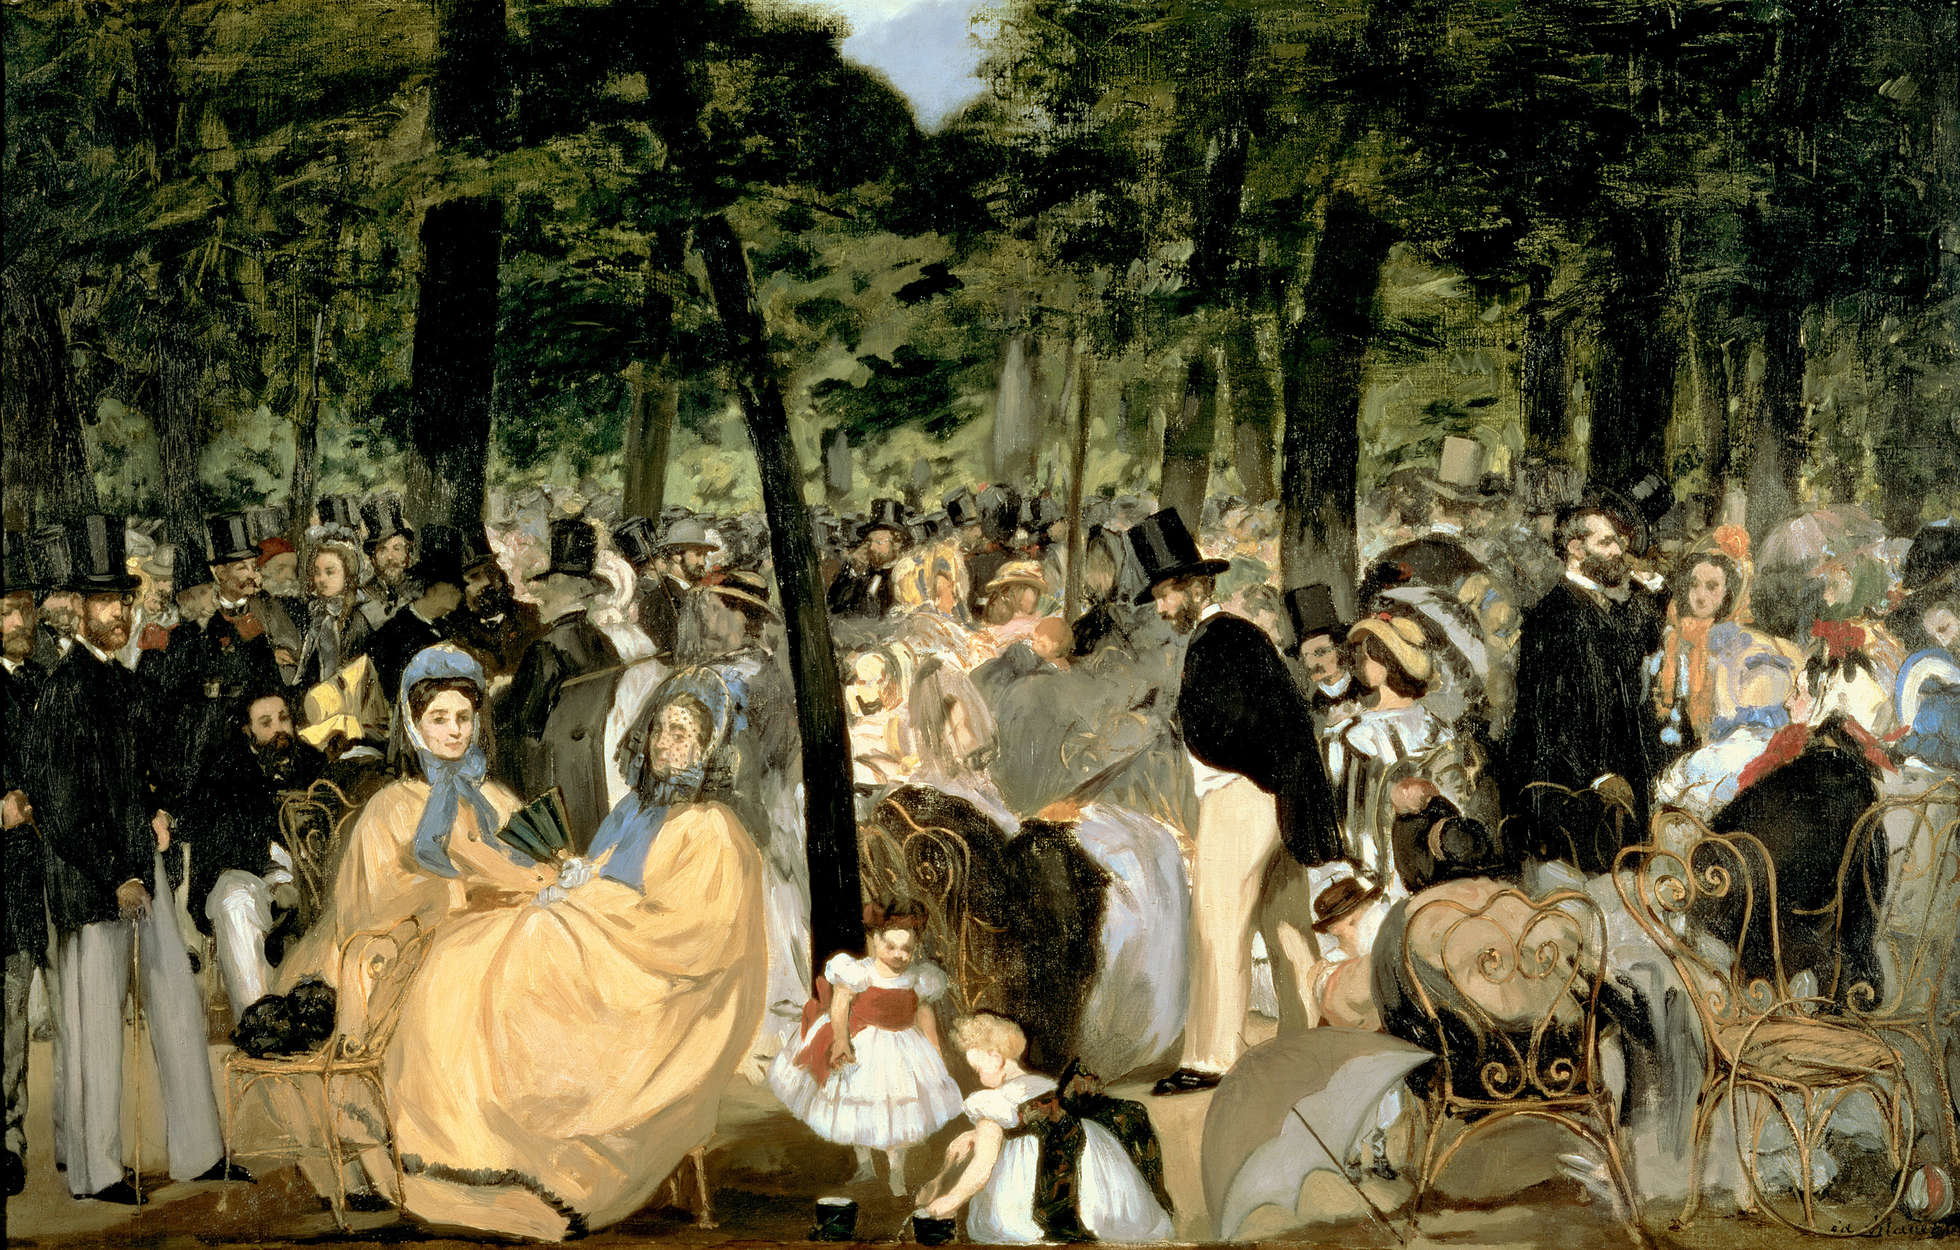             Fototapete "Musik in den Gärten der Tuilerien" von Edouard Manet
        